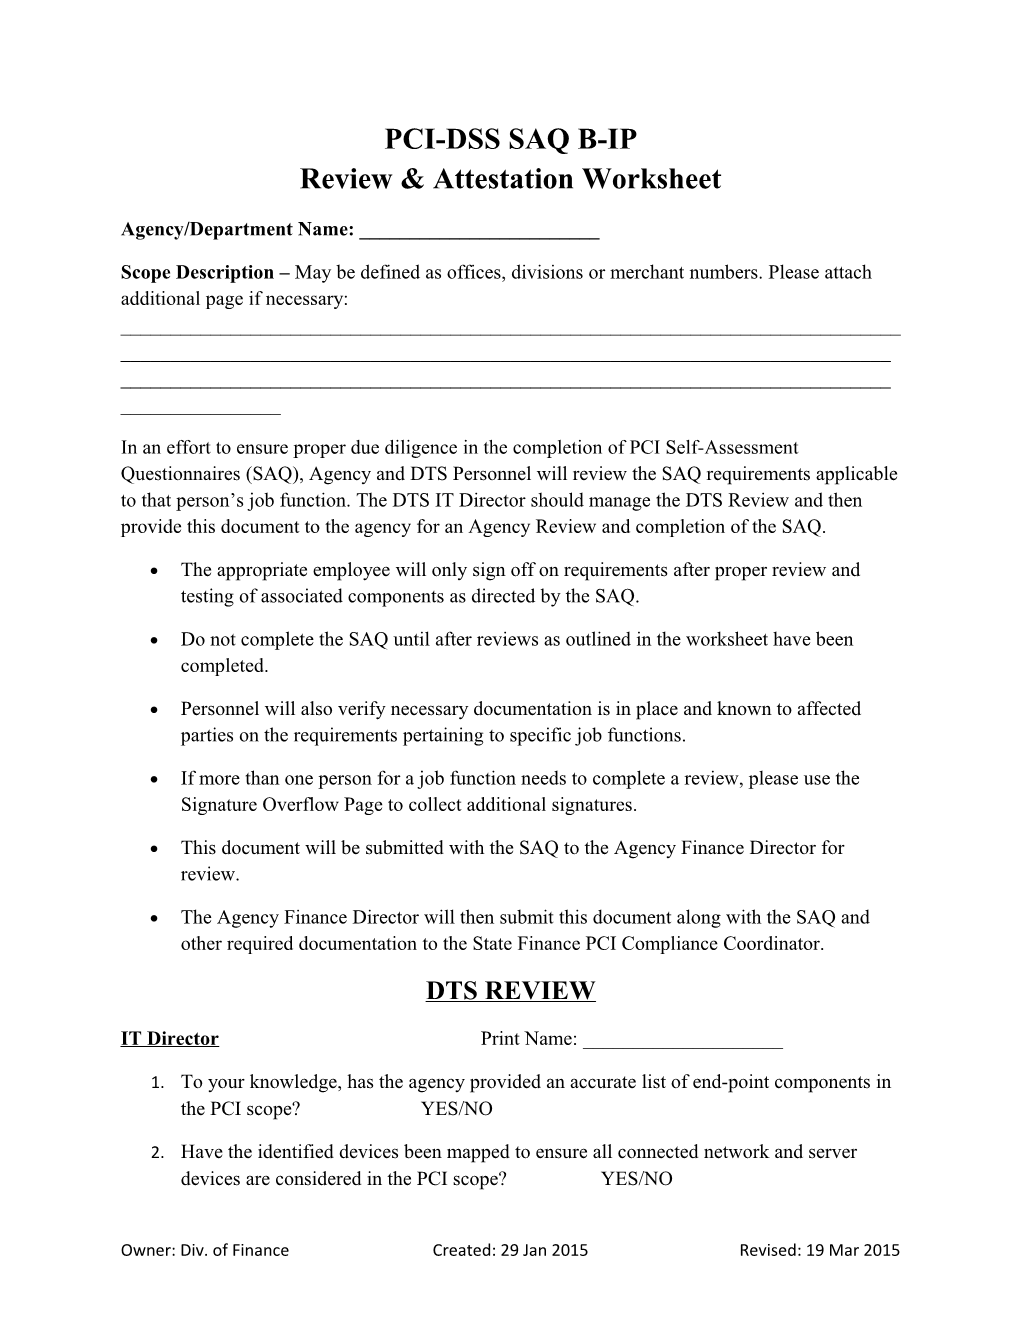 PCI-DSS SAQ B-IP Review & Attestation Worksheet